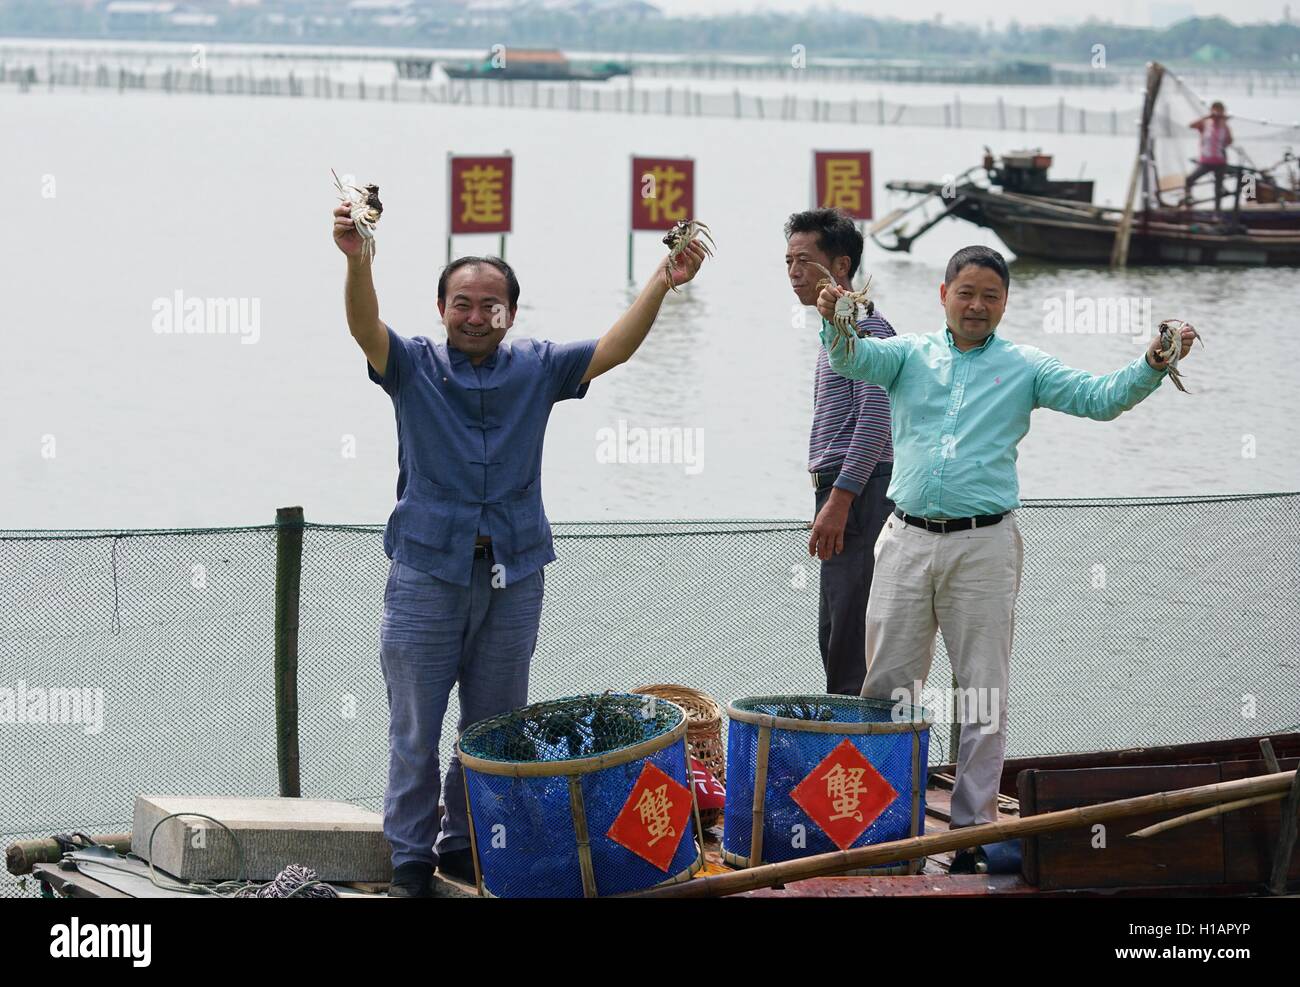 Suzhou, Province de Jiangsu en Chine. 29Th Sep 2016. Démontrer les pêcheurs de crabes chinois sur le lac Yangcheng à Suzhou, Province de Jiangsu en Chine de l'Est, 23 septembre 2016. La saison de récolte 2016 pour le crabe chinois (Eriocheir sinensis) dans le lac Yangcheng, une importante région productrice a commencé le vendredi. Également connue sous le nom de crabe d'écluse, le crabe chinois sont favorisés par de nombreux amateurs de cuisine gastronomique. © Ji Chunpeng/Xinhua/Alamy Live News Banque D'Images